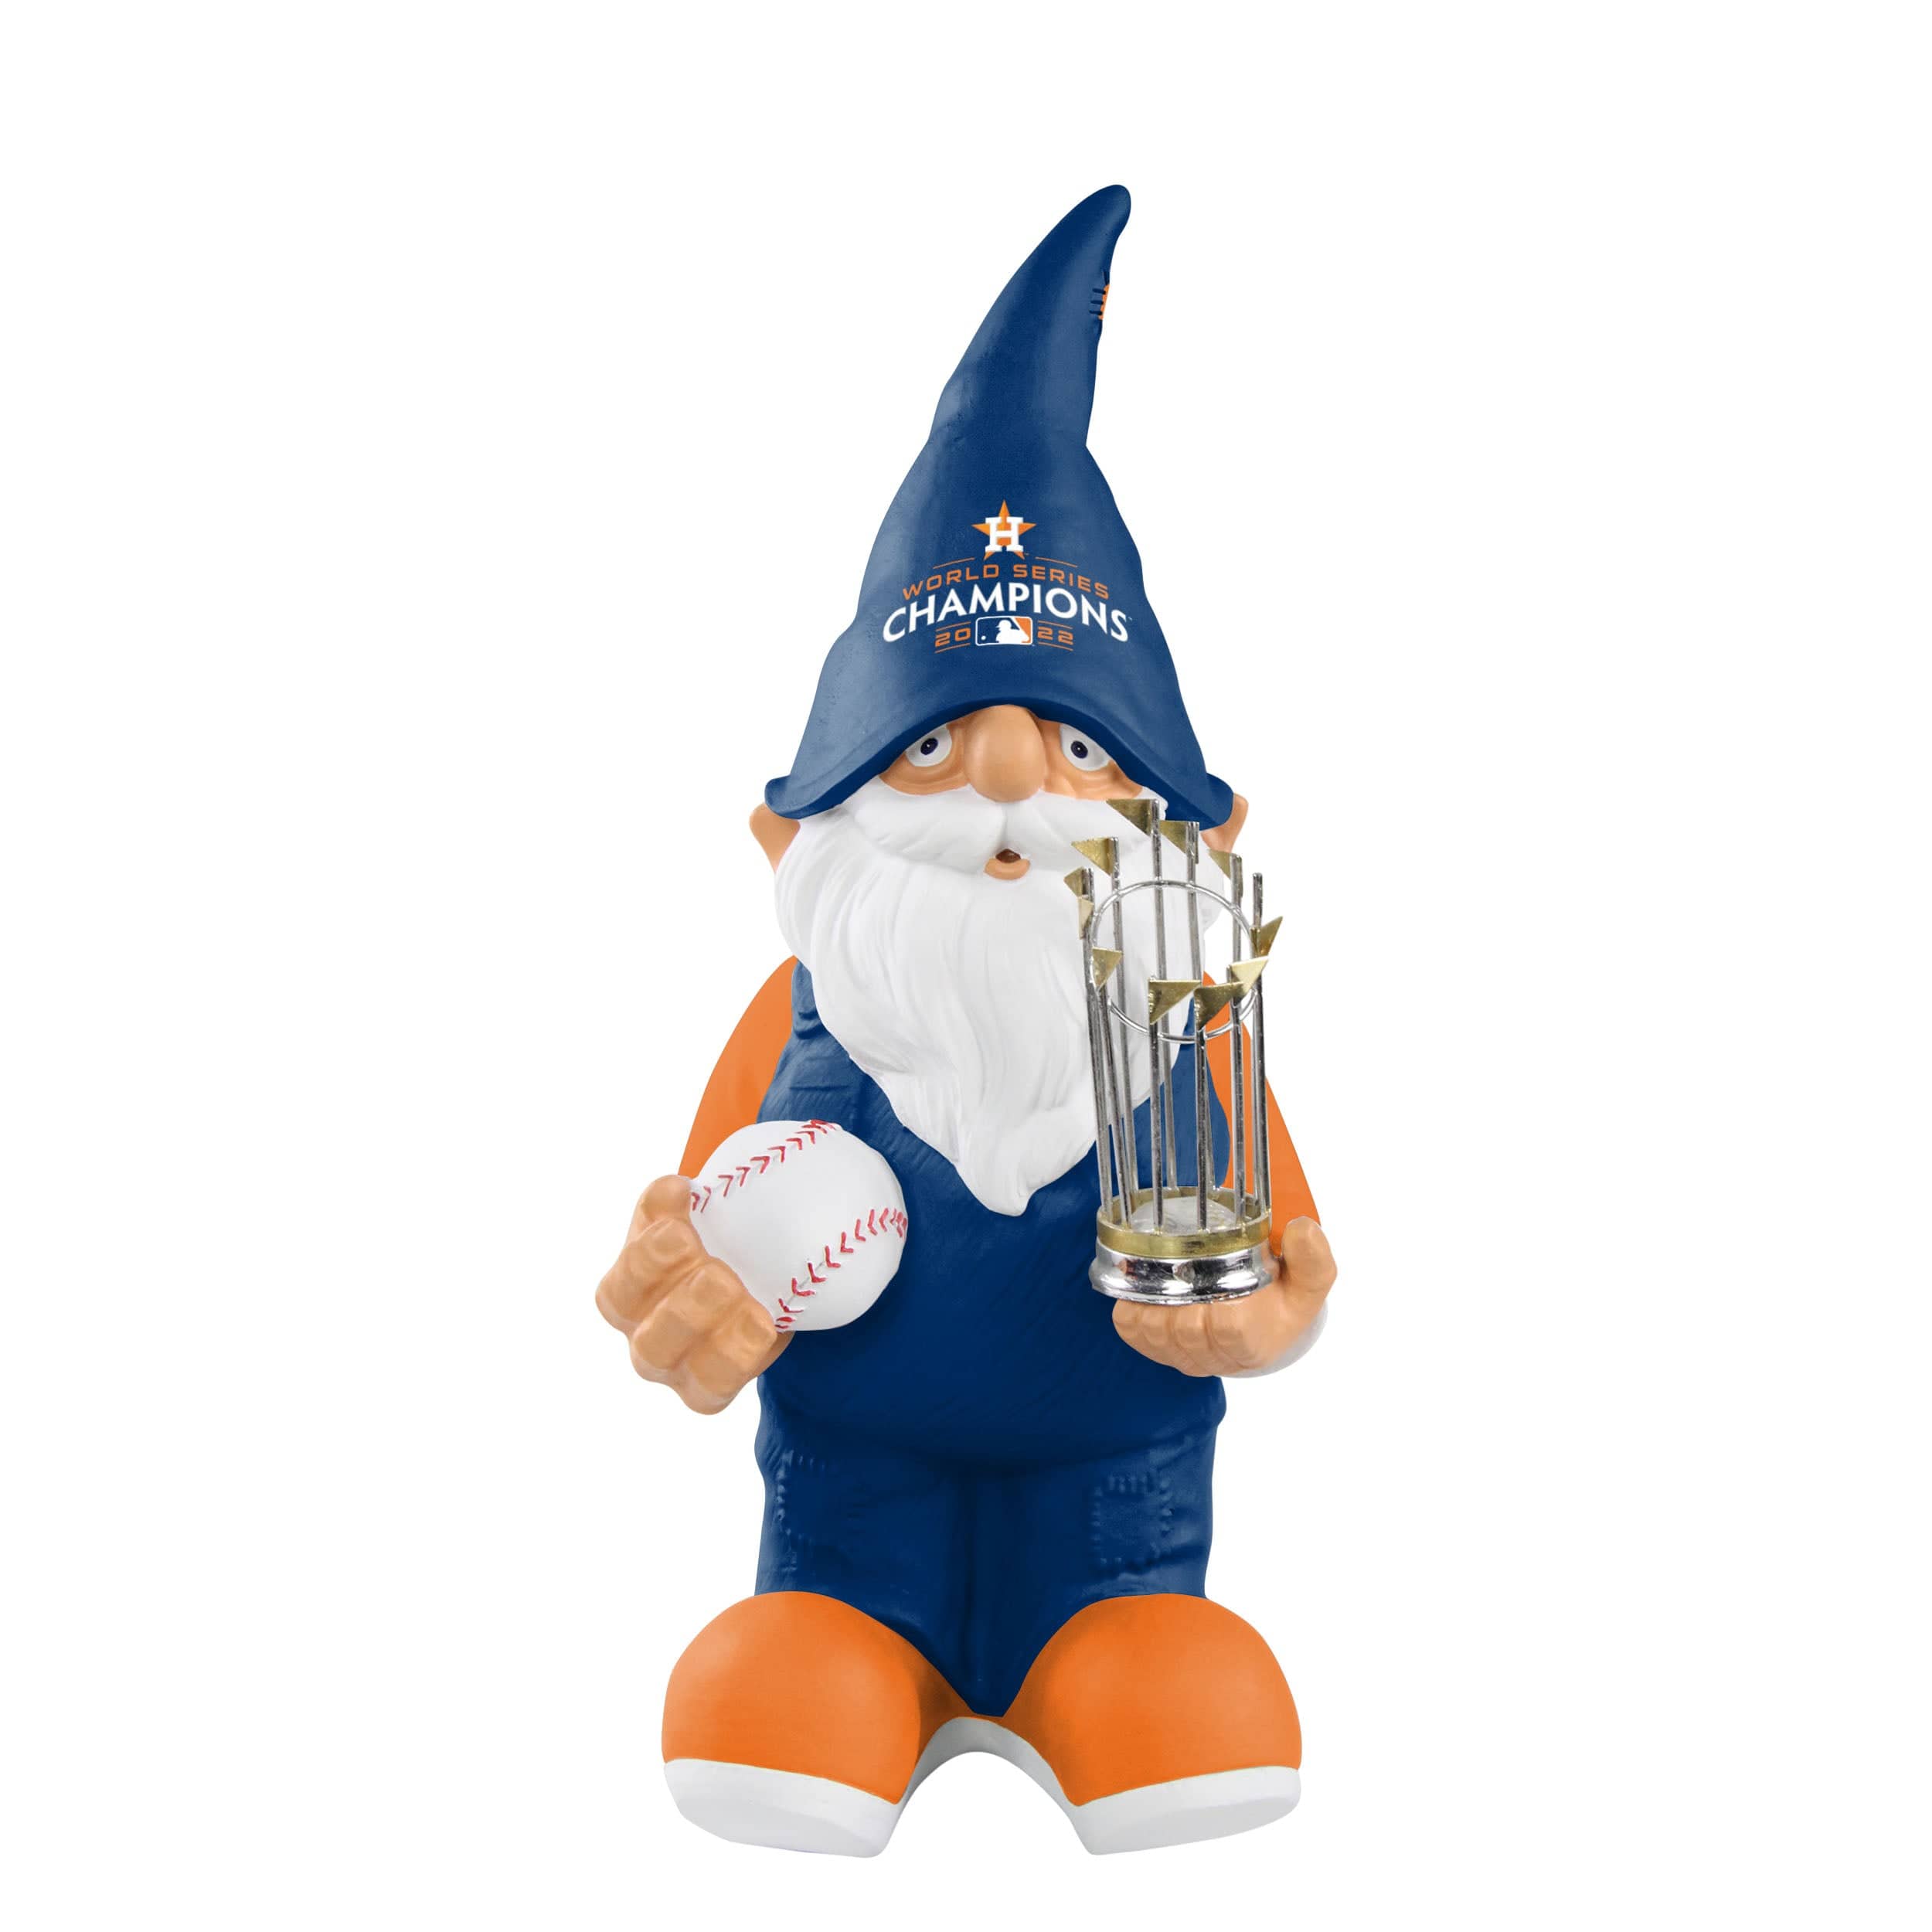 Mlb Yankee's Gnome 